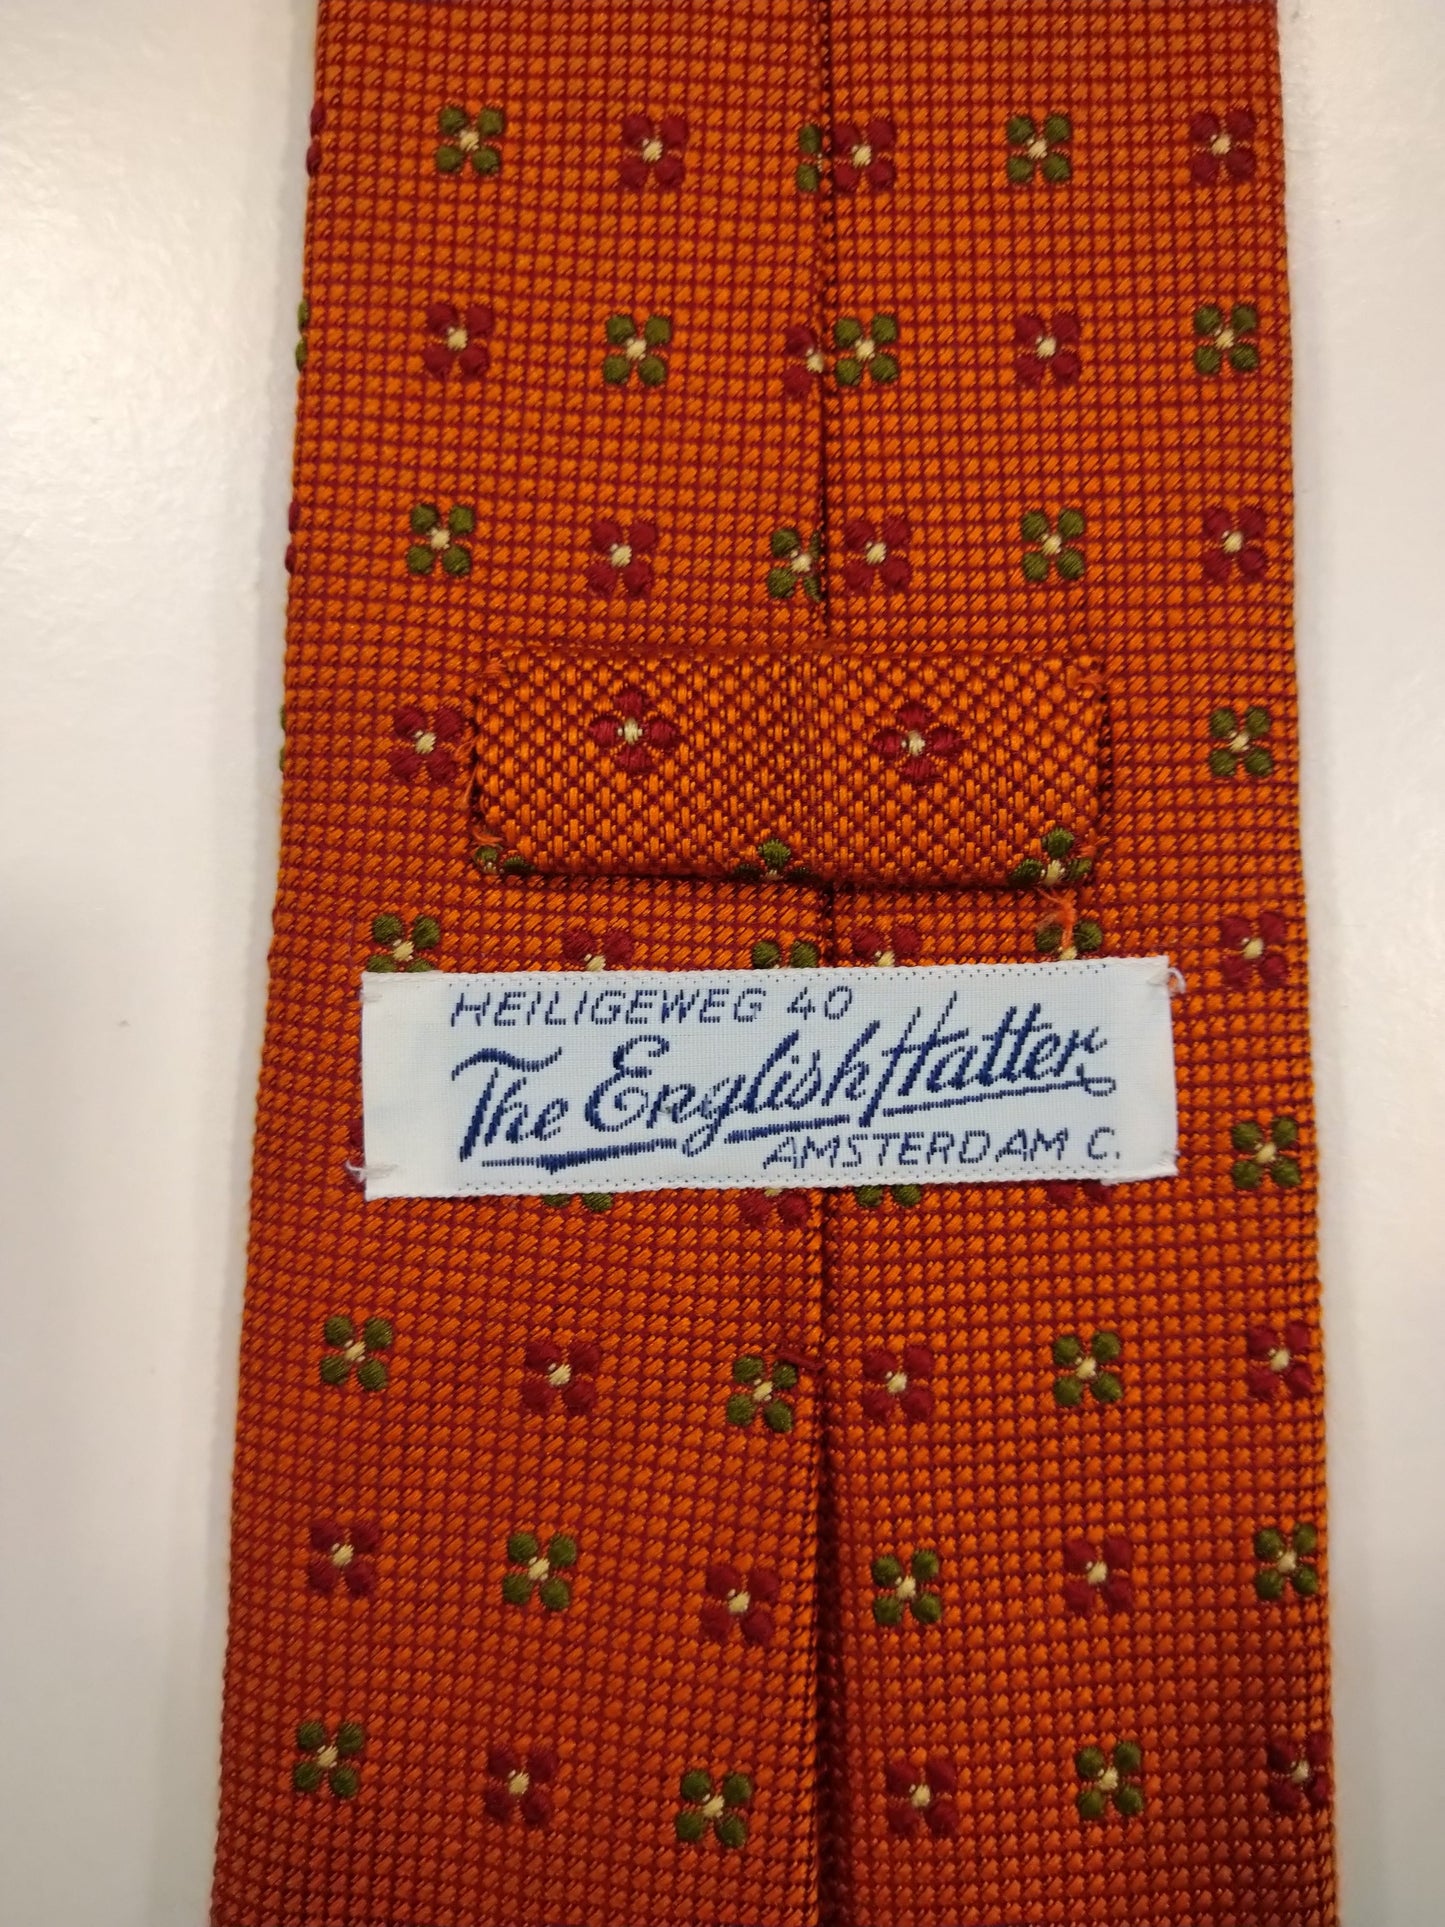 Il cappellaio inglese fece una cravatta di seta. Motivo arancione.